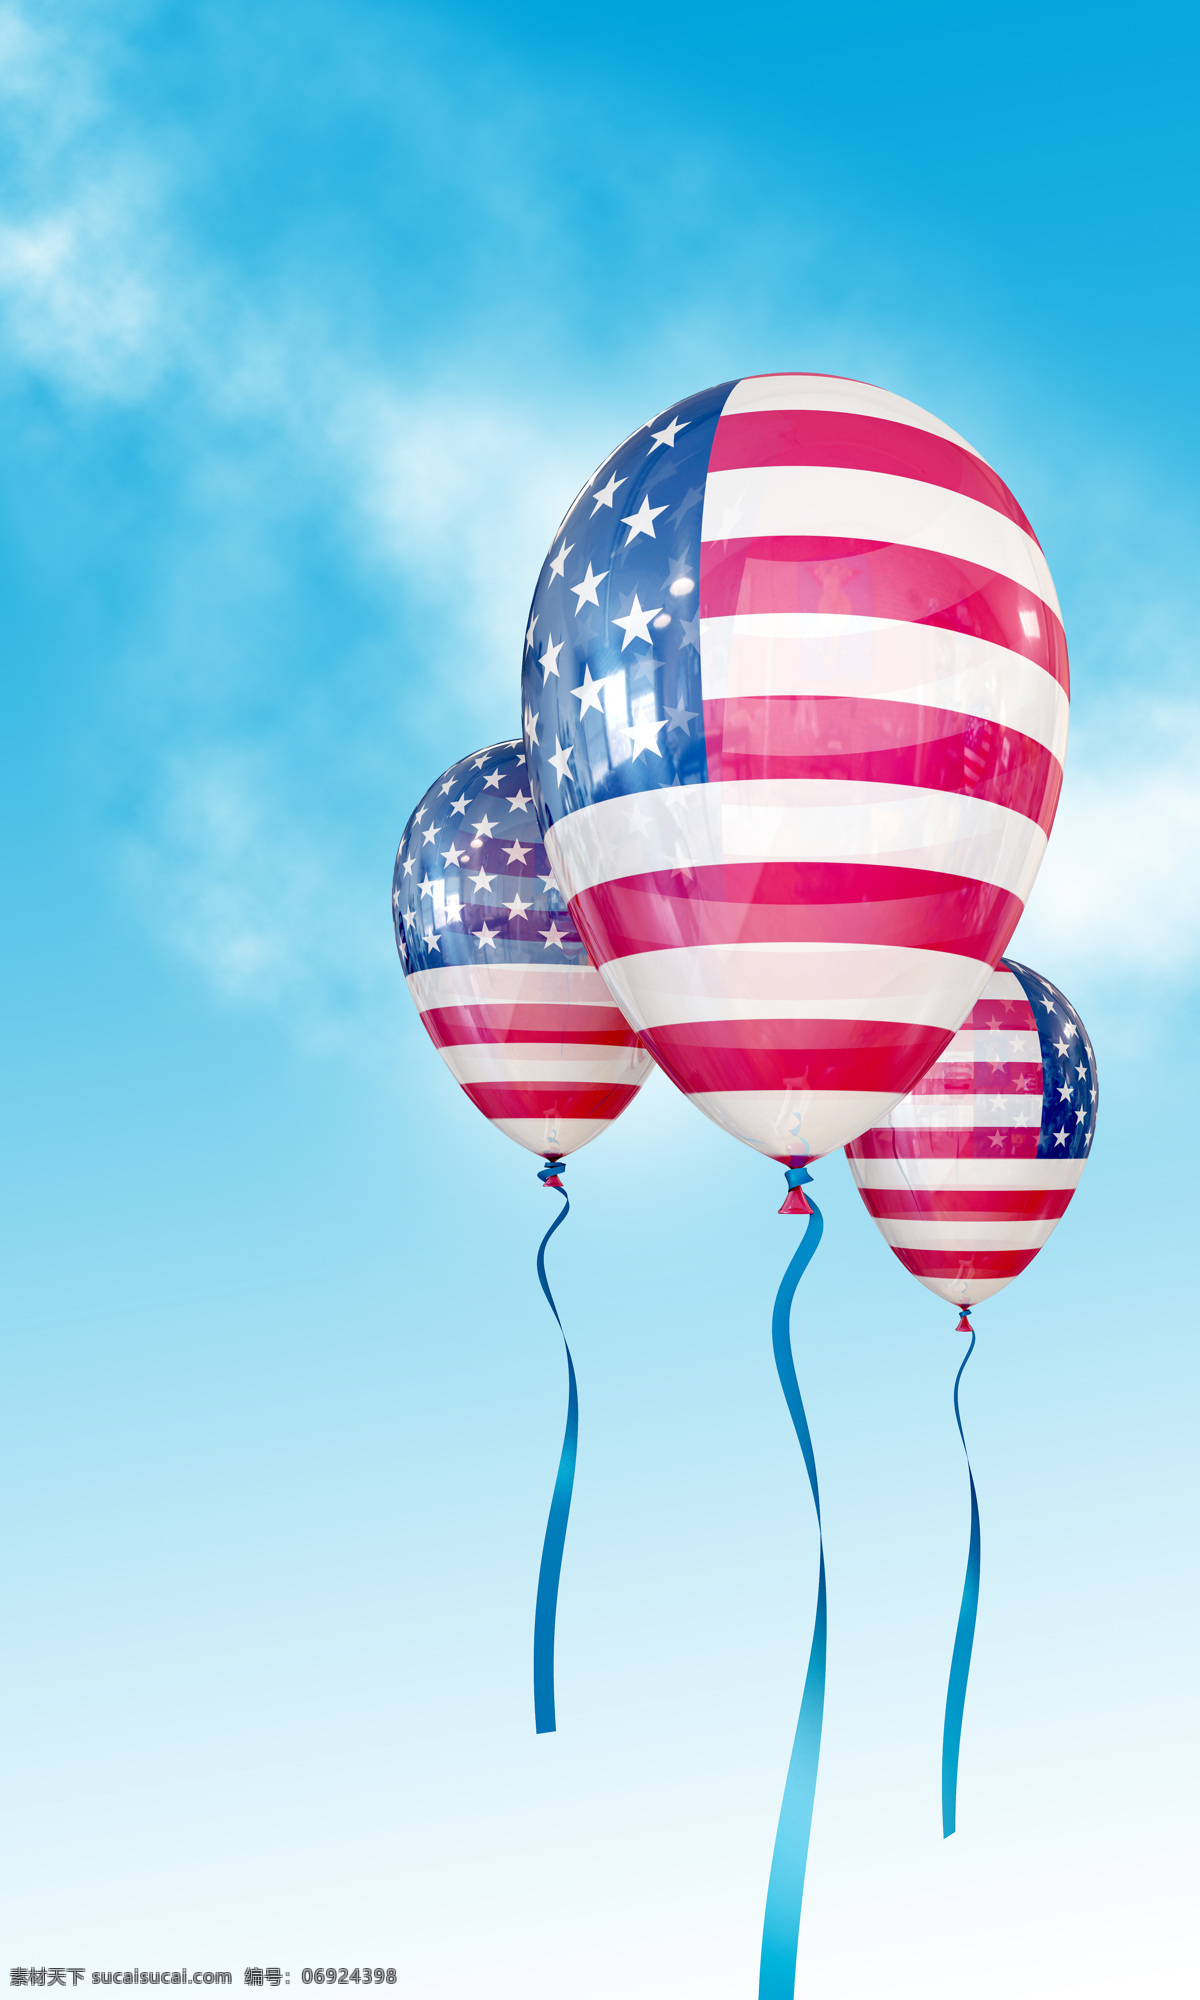 气球 美国国旗 星条旗 美国文化 美国精神 美国象征 生活素材 生活百科